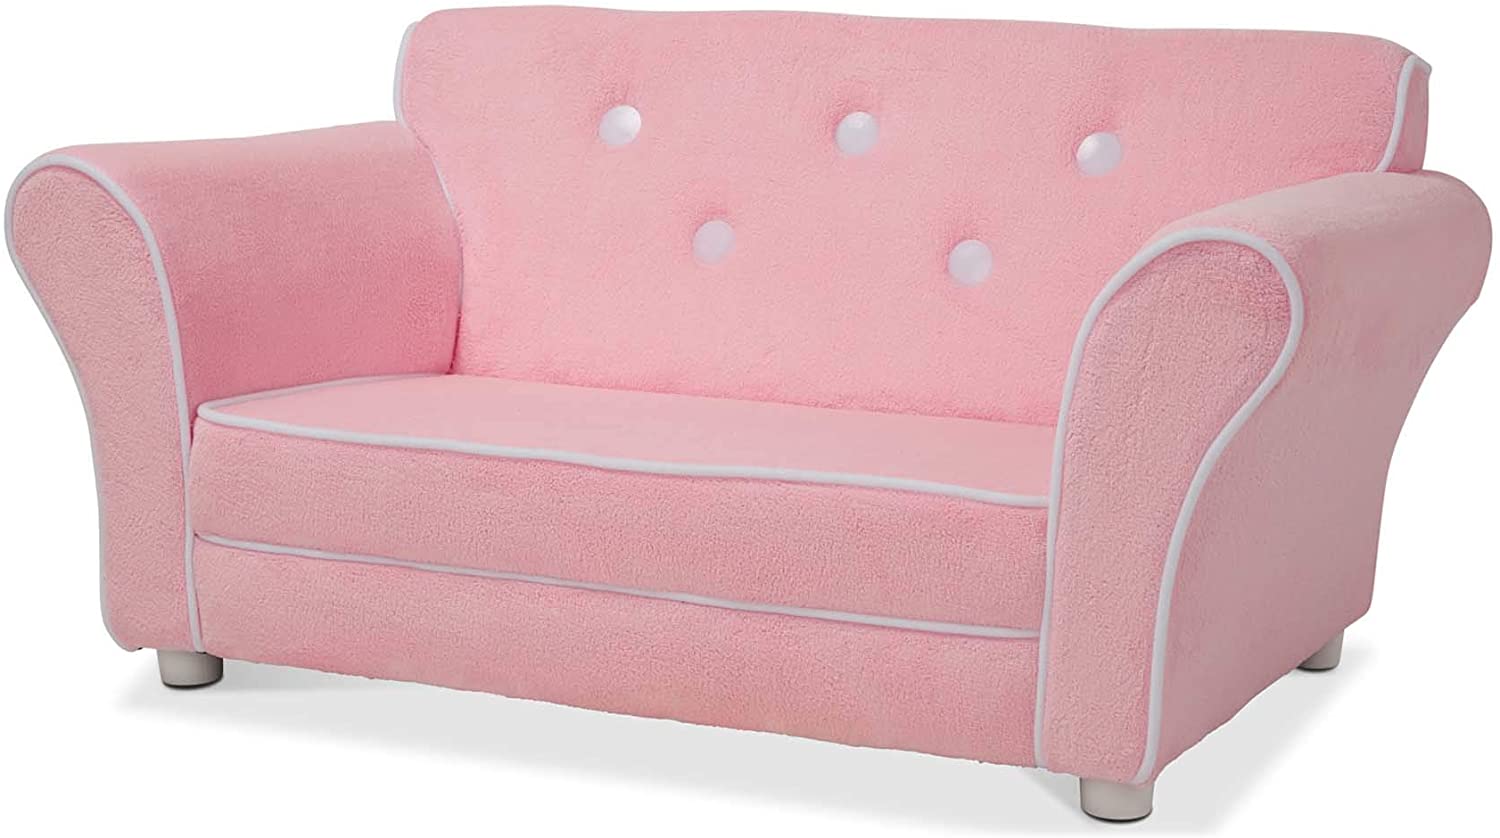 Child's Sofa - Pink Plush Children's Furniture